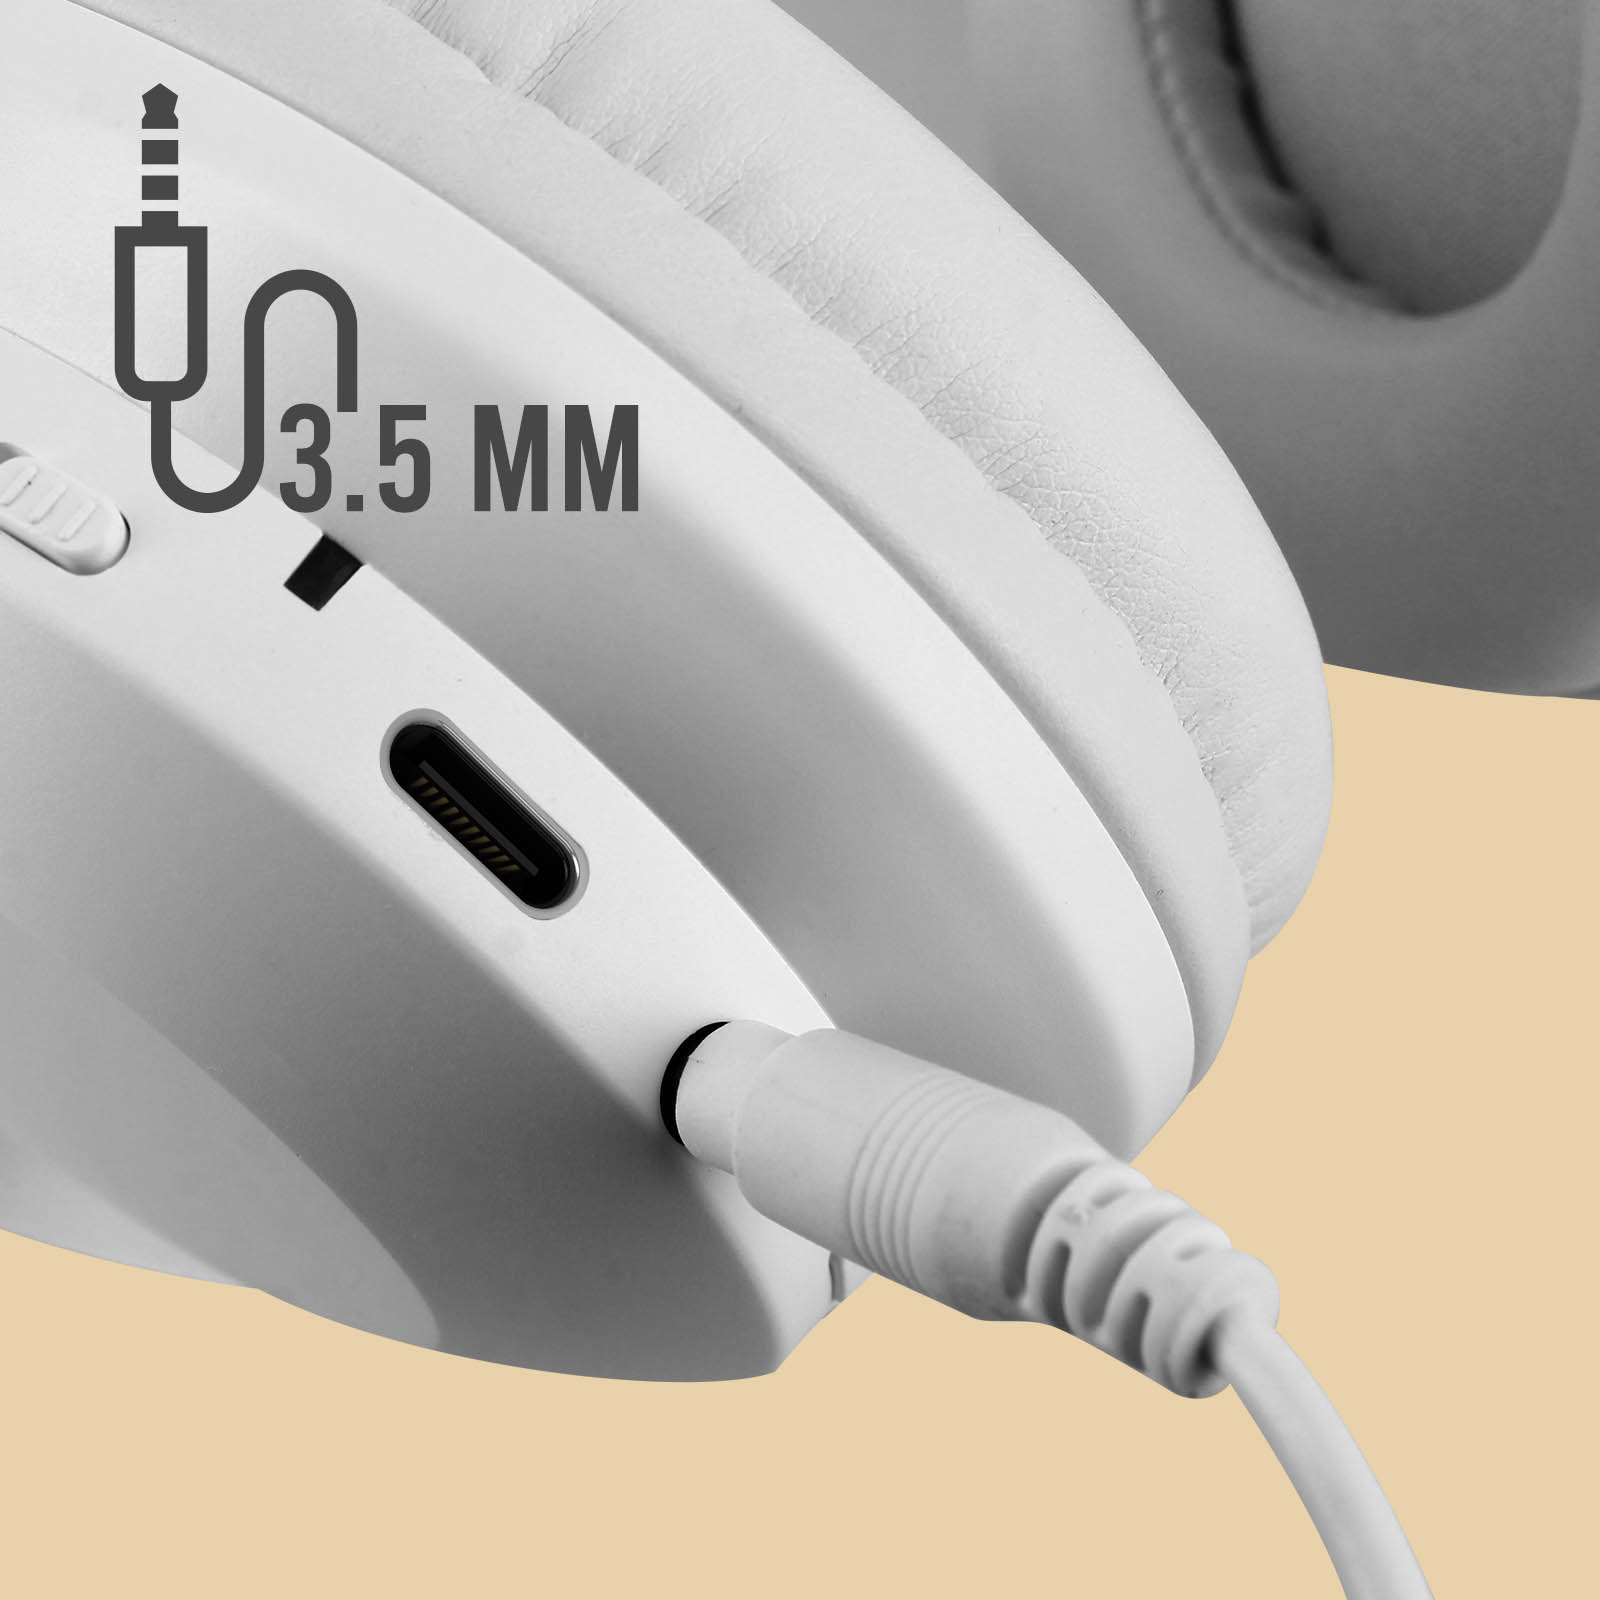 Casque audiophile Bluetooth : son clair avec réduction de bruit